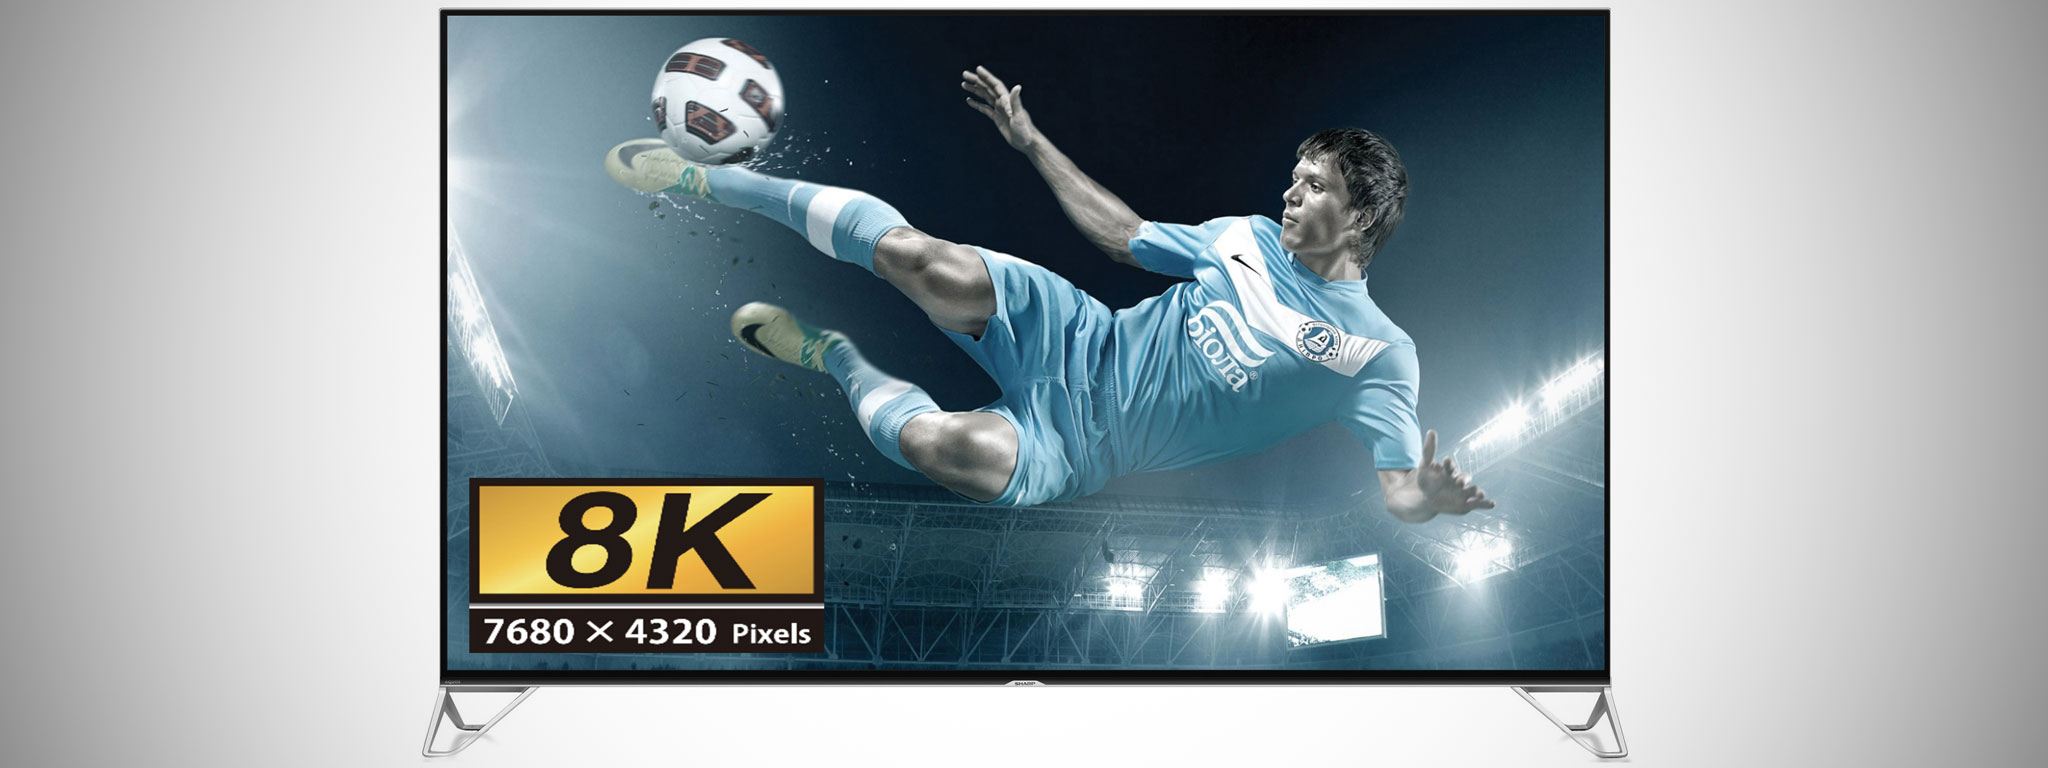 Sharp giới thiệu dòng TV 8K AQUOS, giá khởi điểm có thể từ 9.000 USD